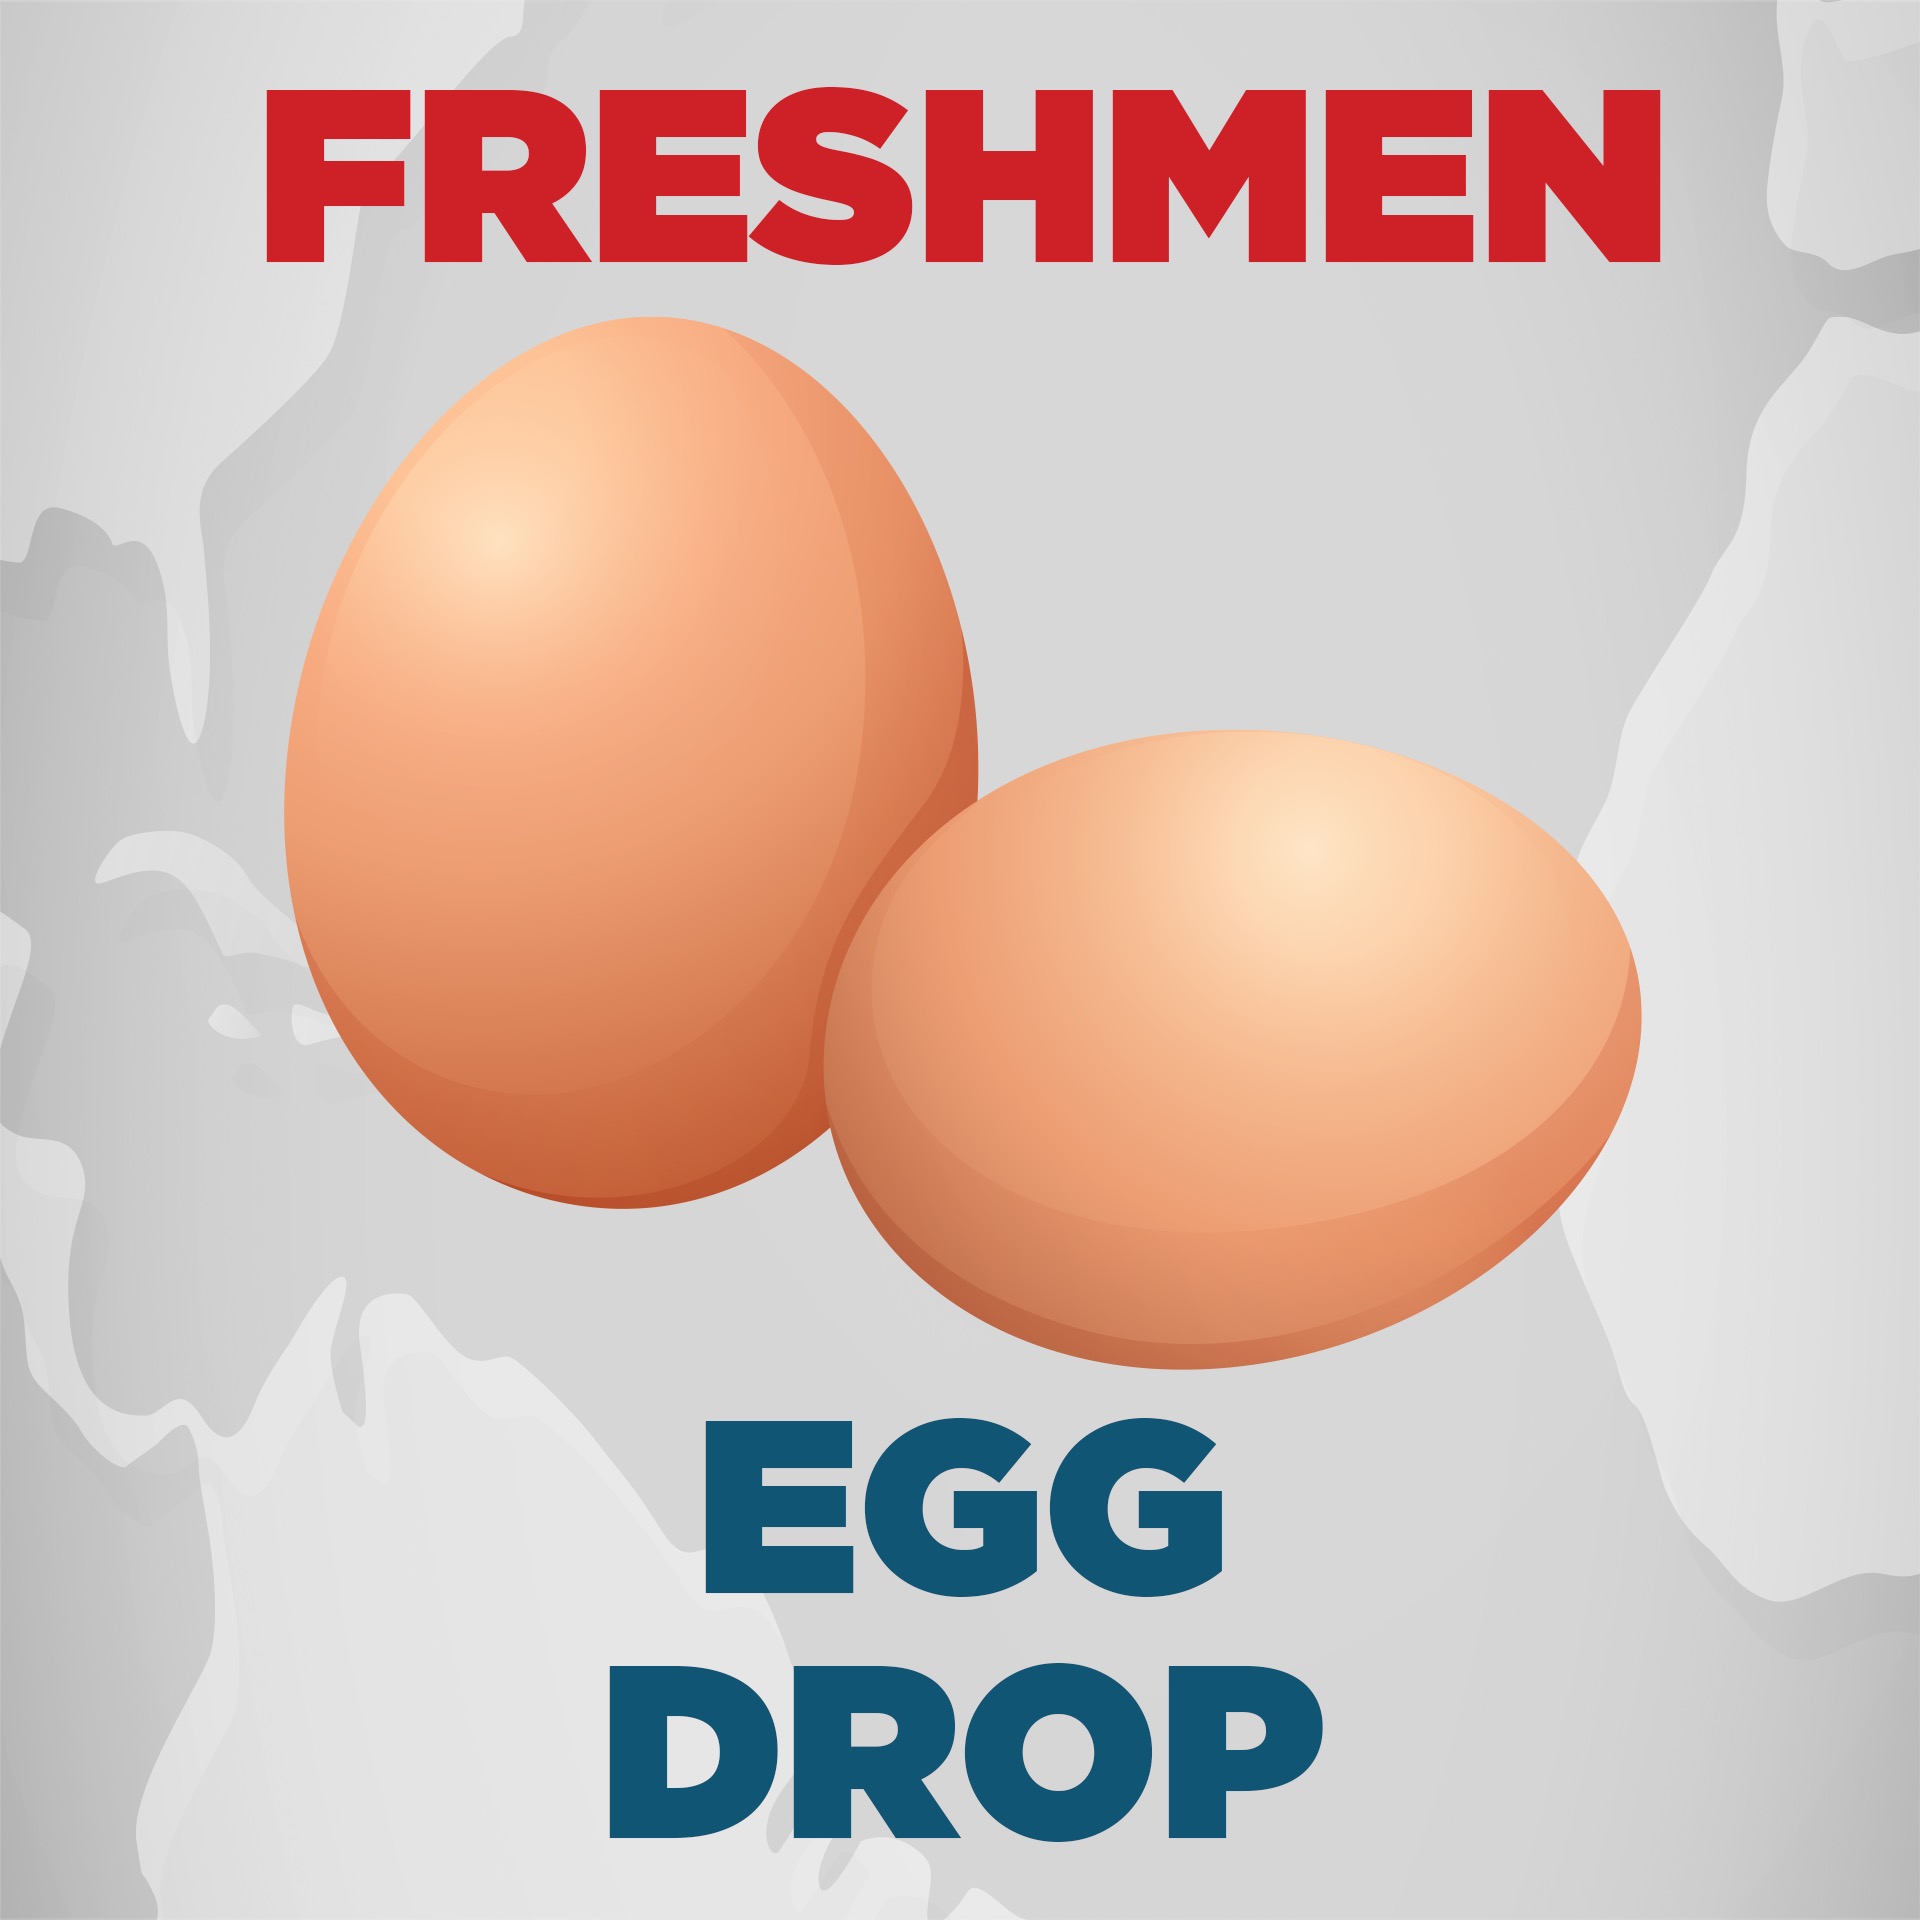 9th Egg Drop